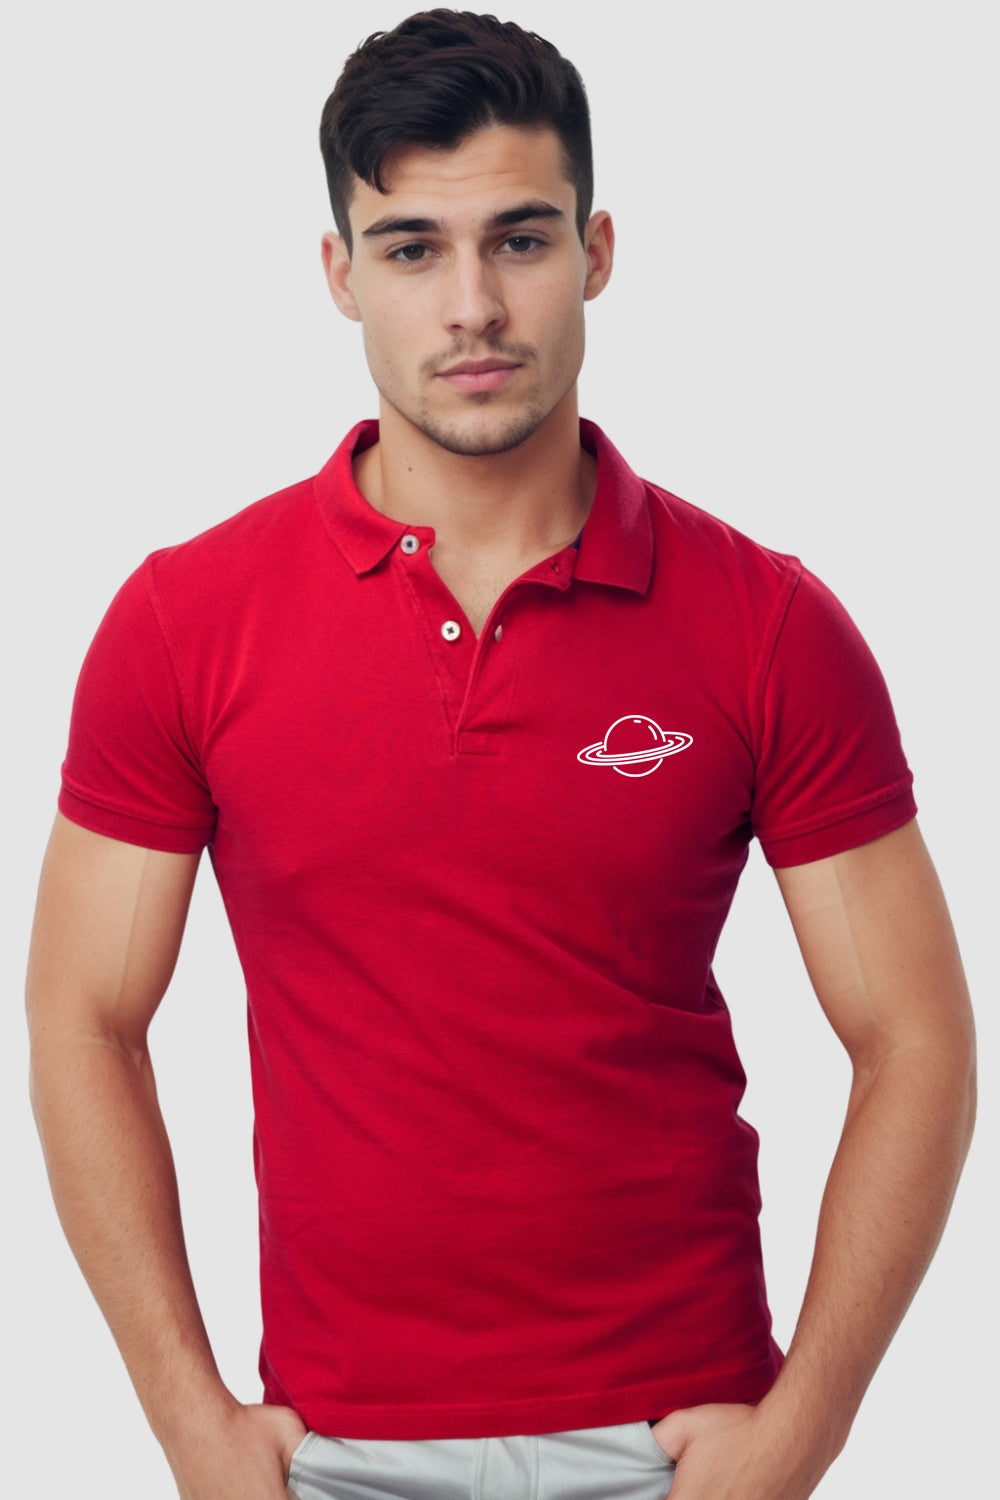 Planet Pocket Printed Red Polo Tshirt